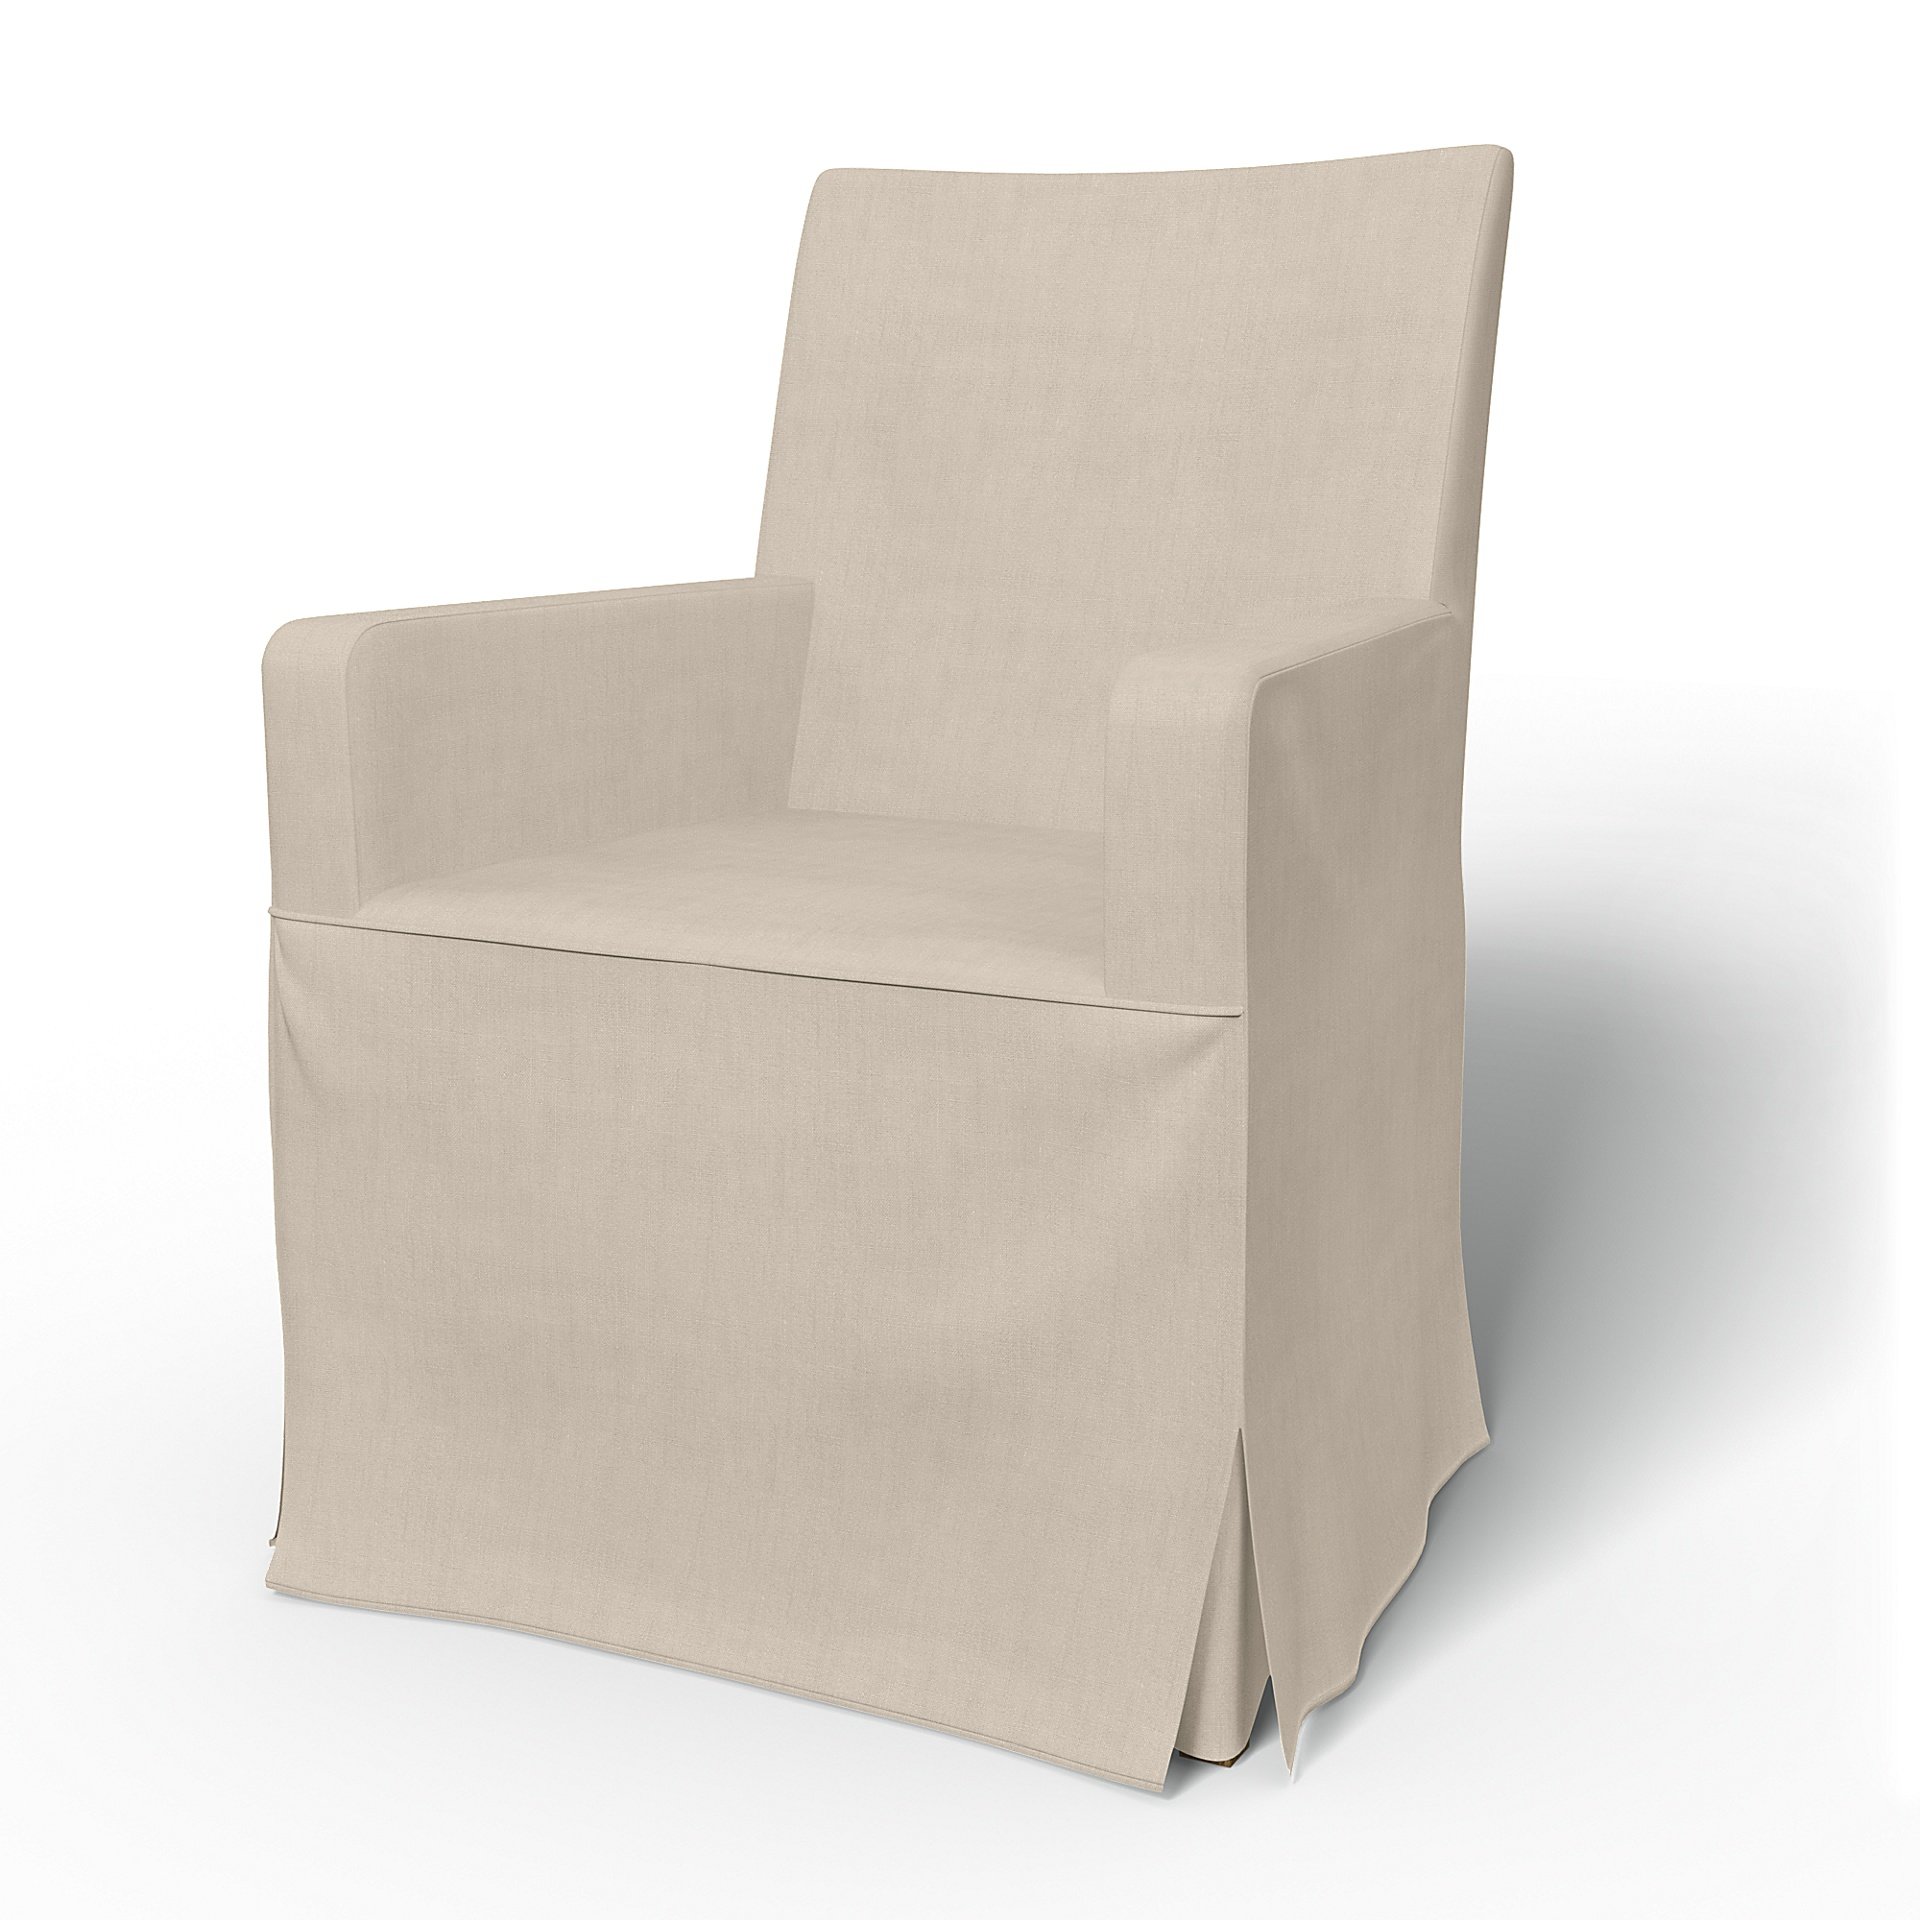 IKEA - Henriksdal, Chair cover w/ armrests, long skirt box pleat, Parchment, Linen - Bemz